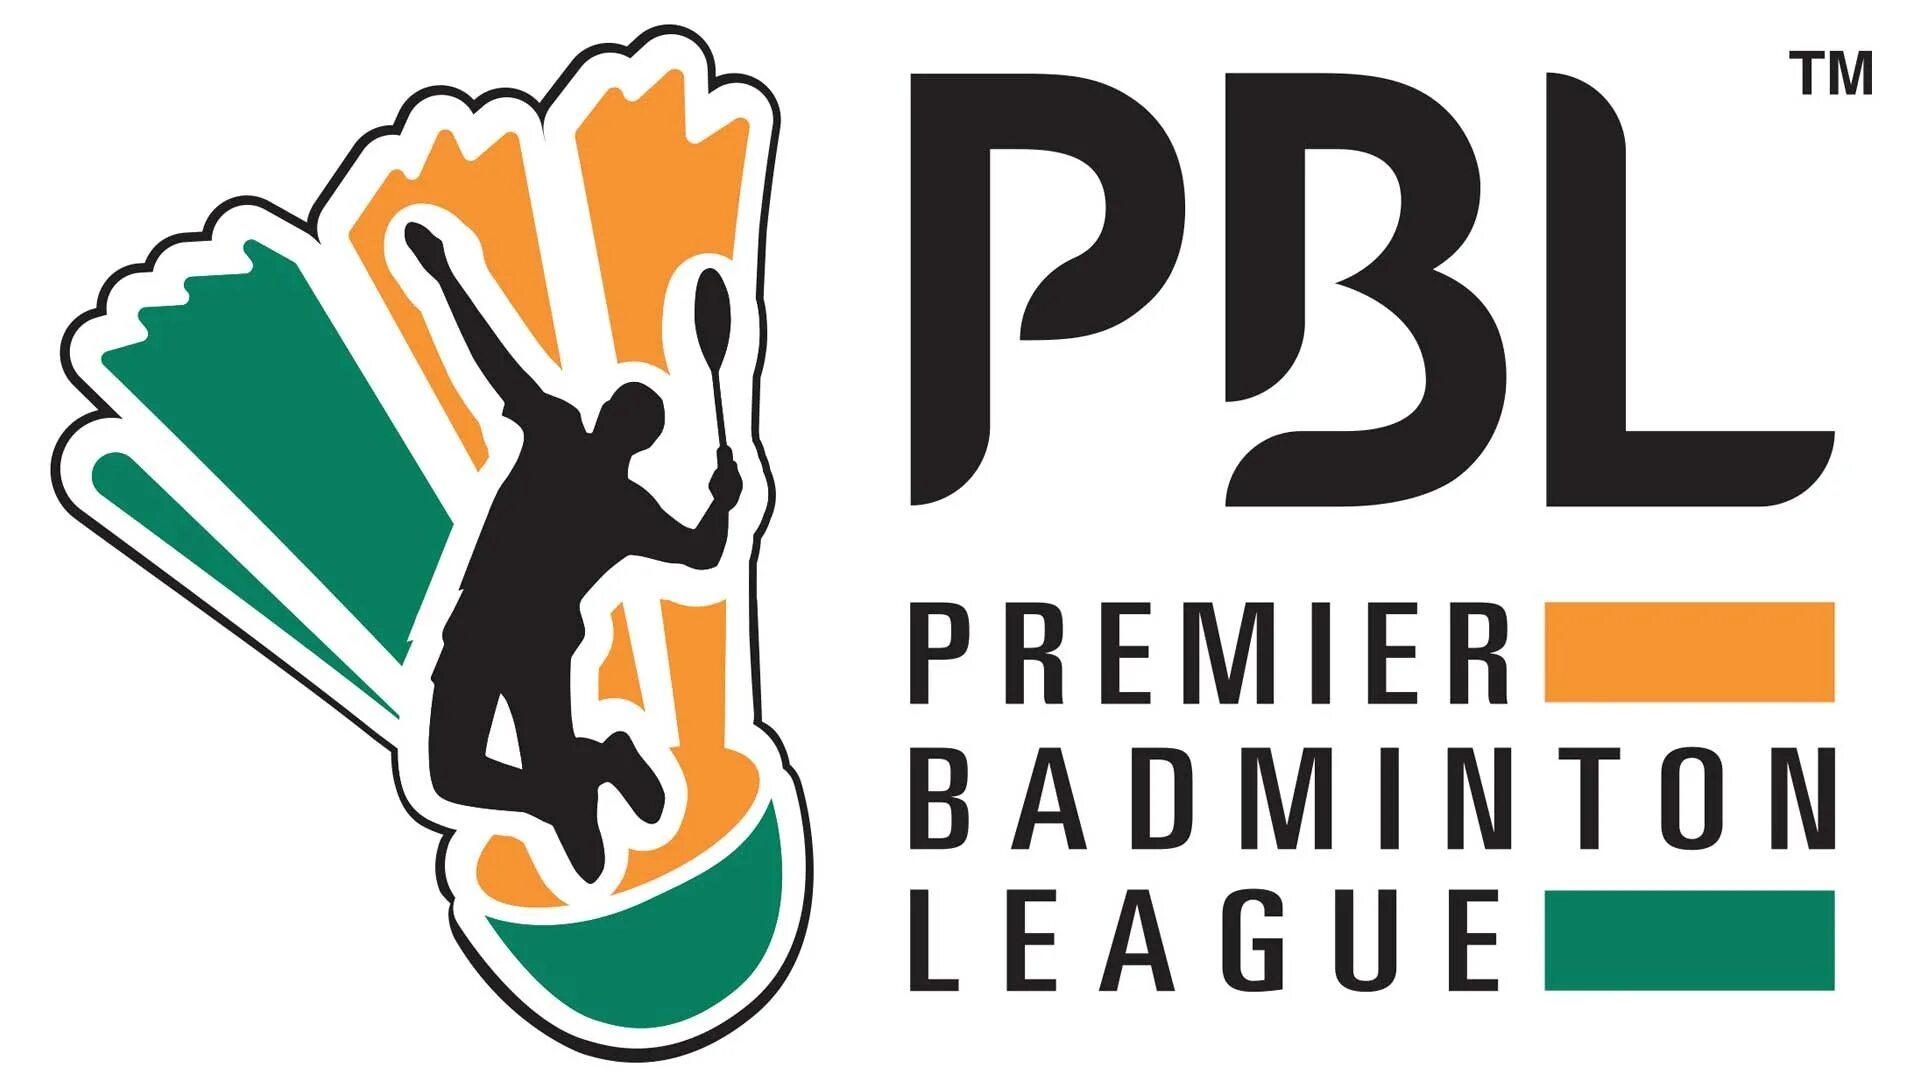 Лига бадминтона. Бадминтон эмблема. Индийская премьер-лига. Бадминтон лига. Badminton Association of India.